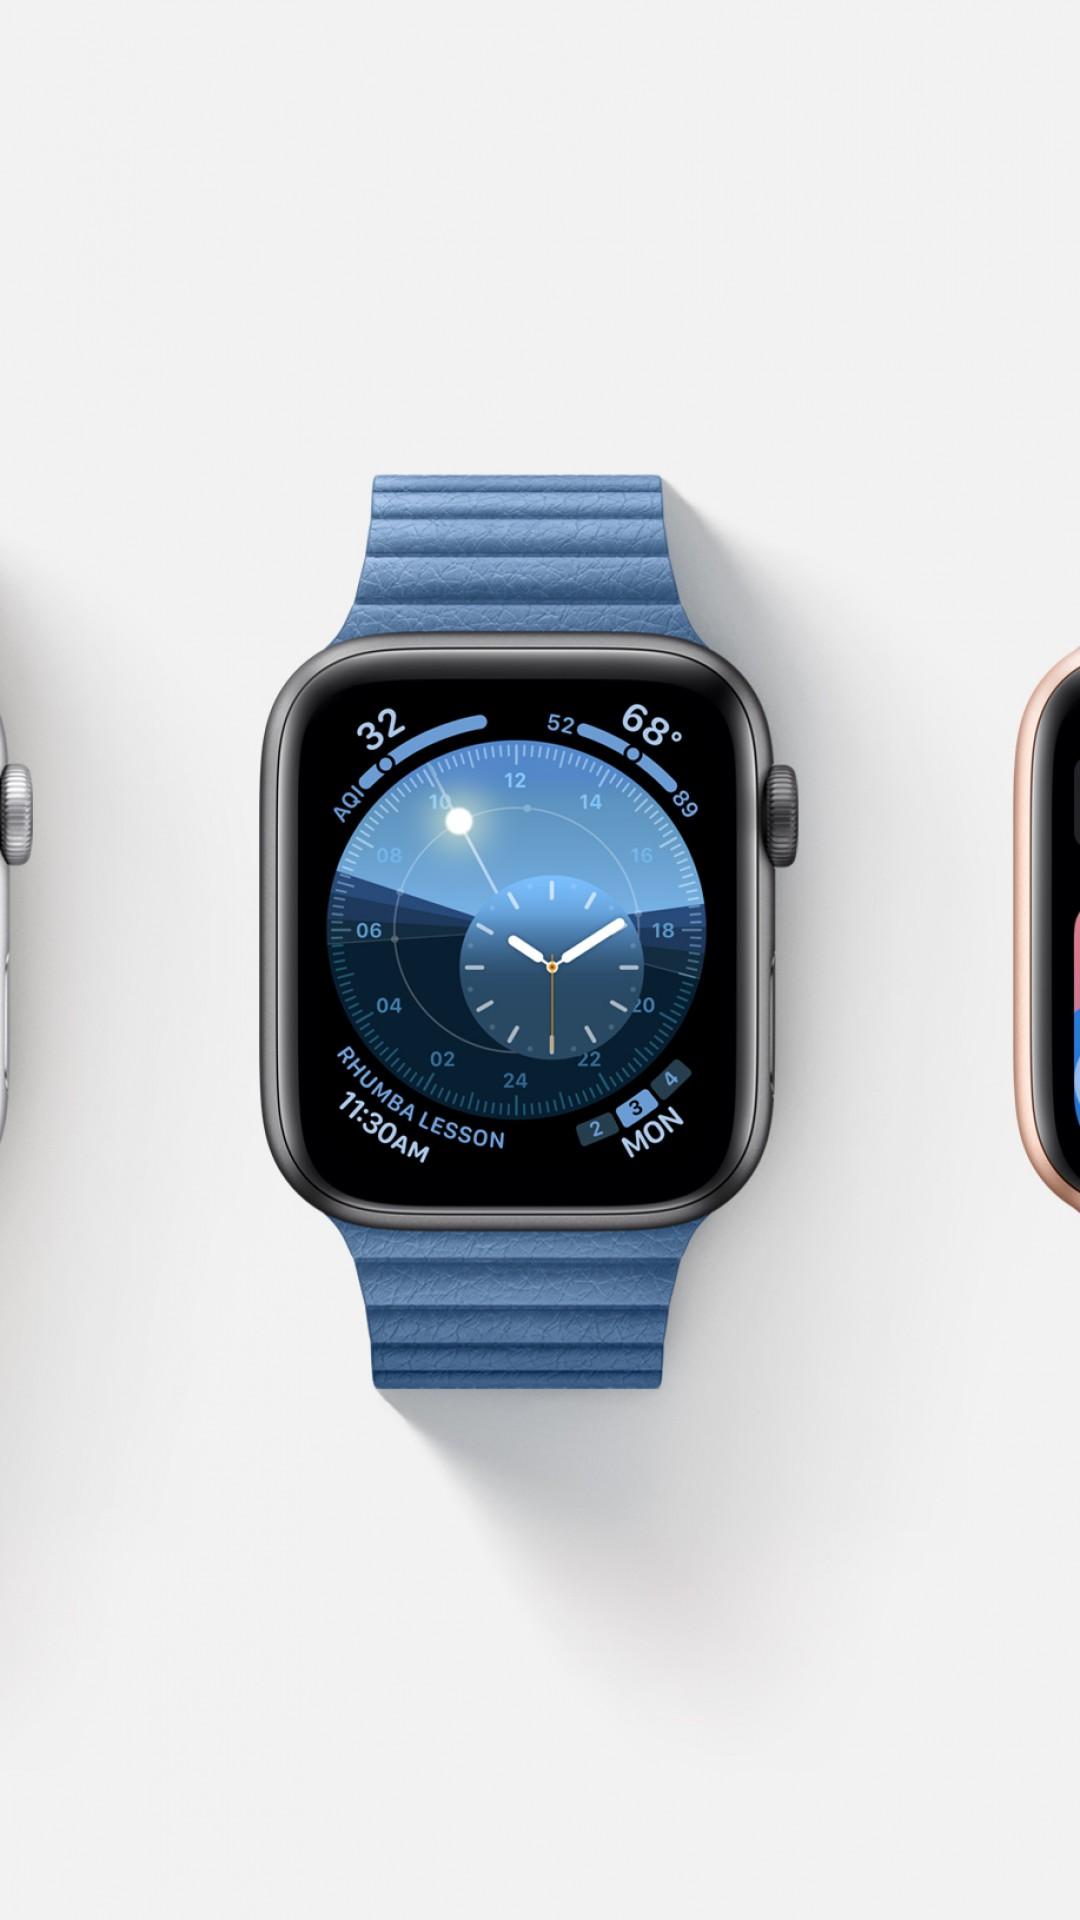 1080 x 1920 · jpeg - Wallpaper watchOS 6, interface, GUI, Apple Watch Series 4, WWDC 2019 ...